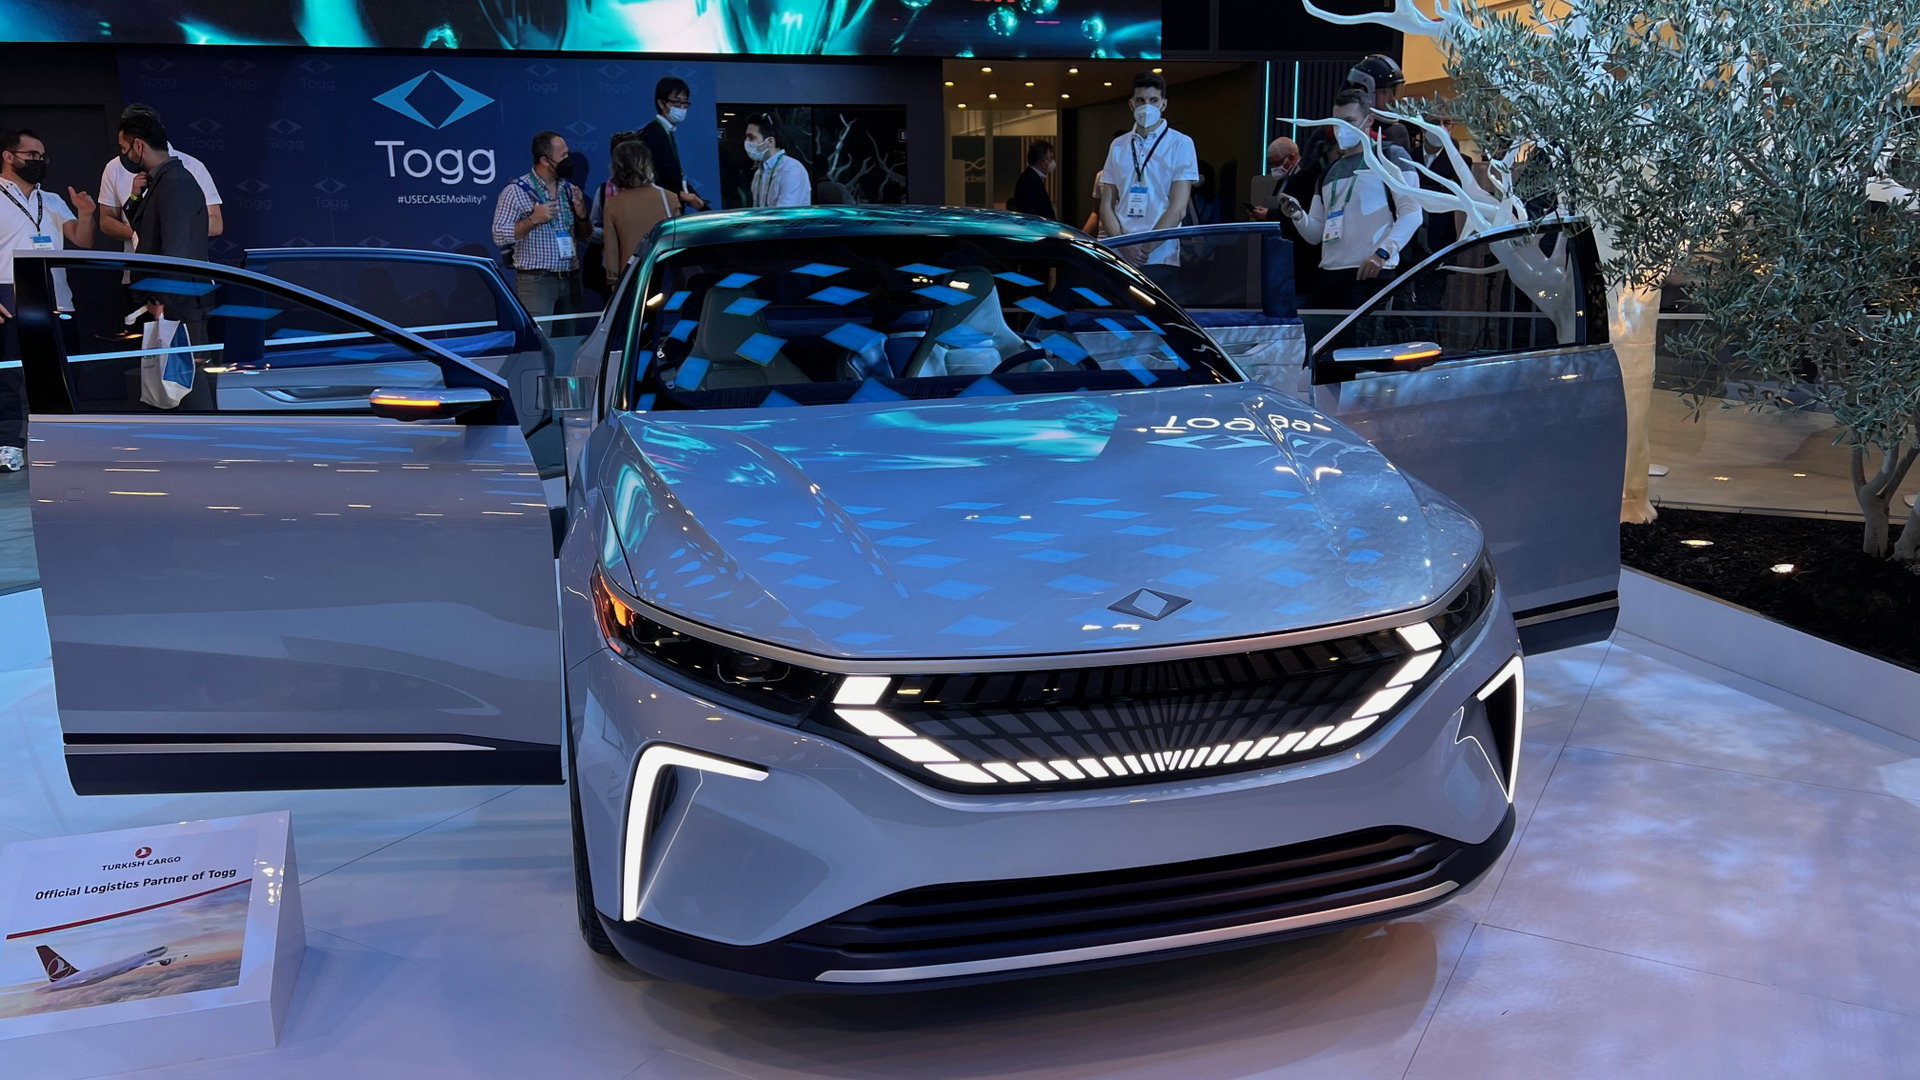 首款车型年底量产 Togg概念车亮相2022年CES展会